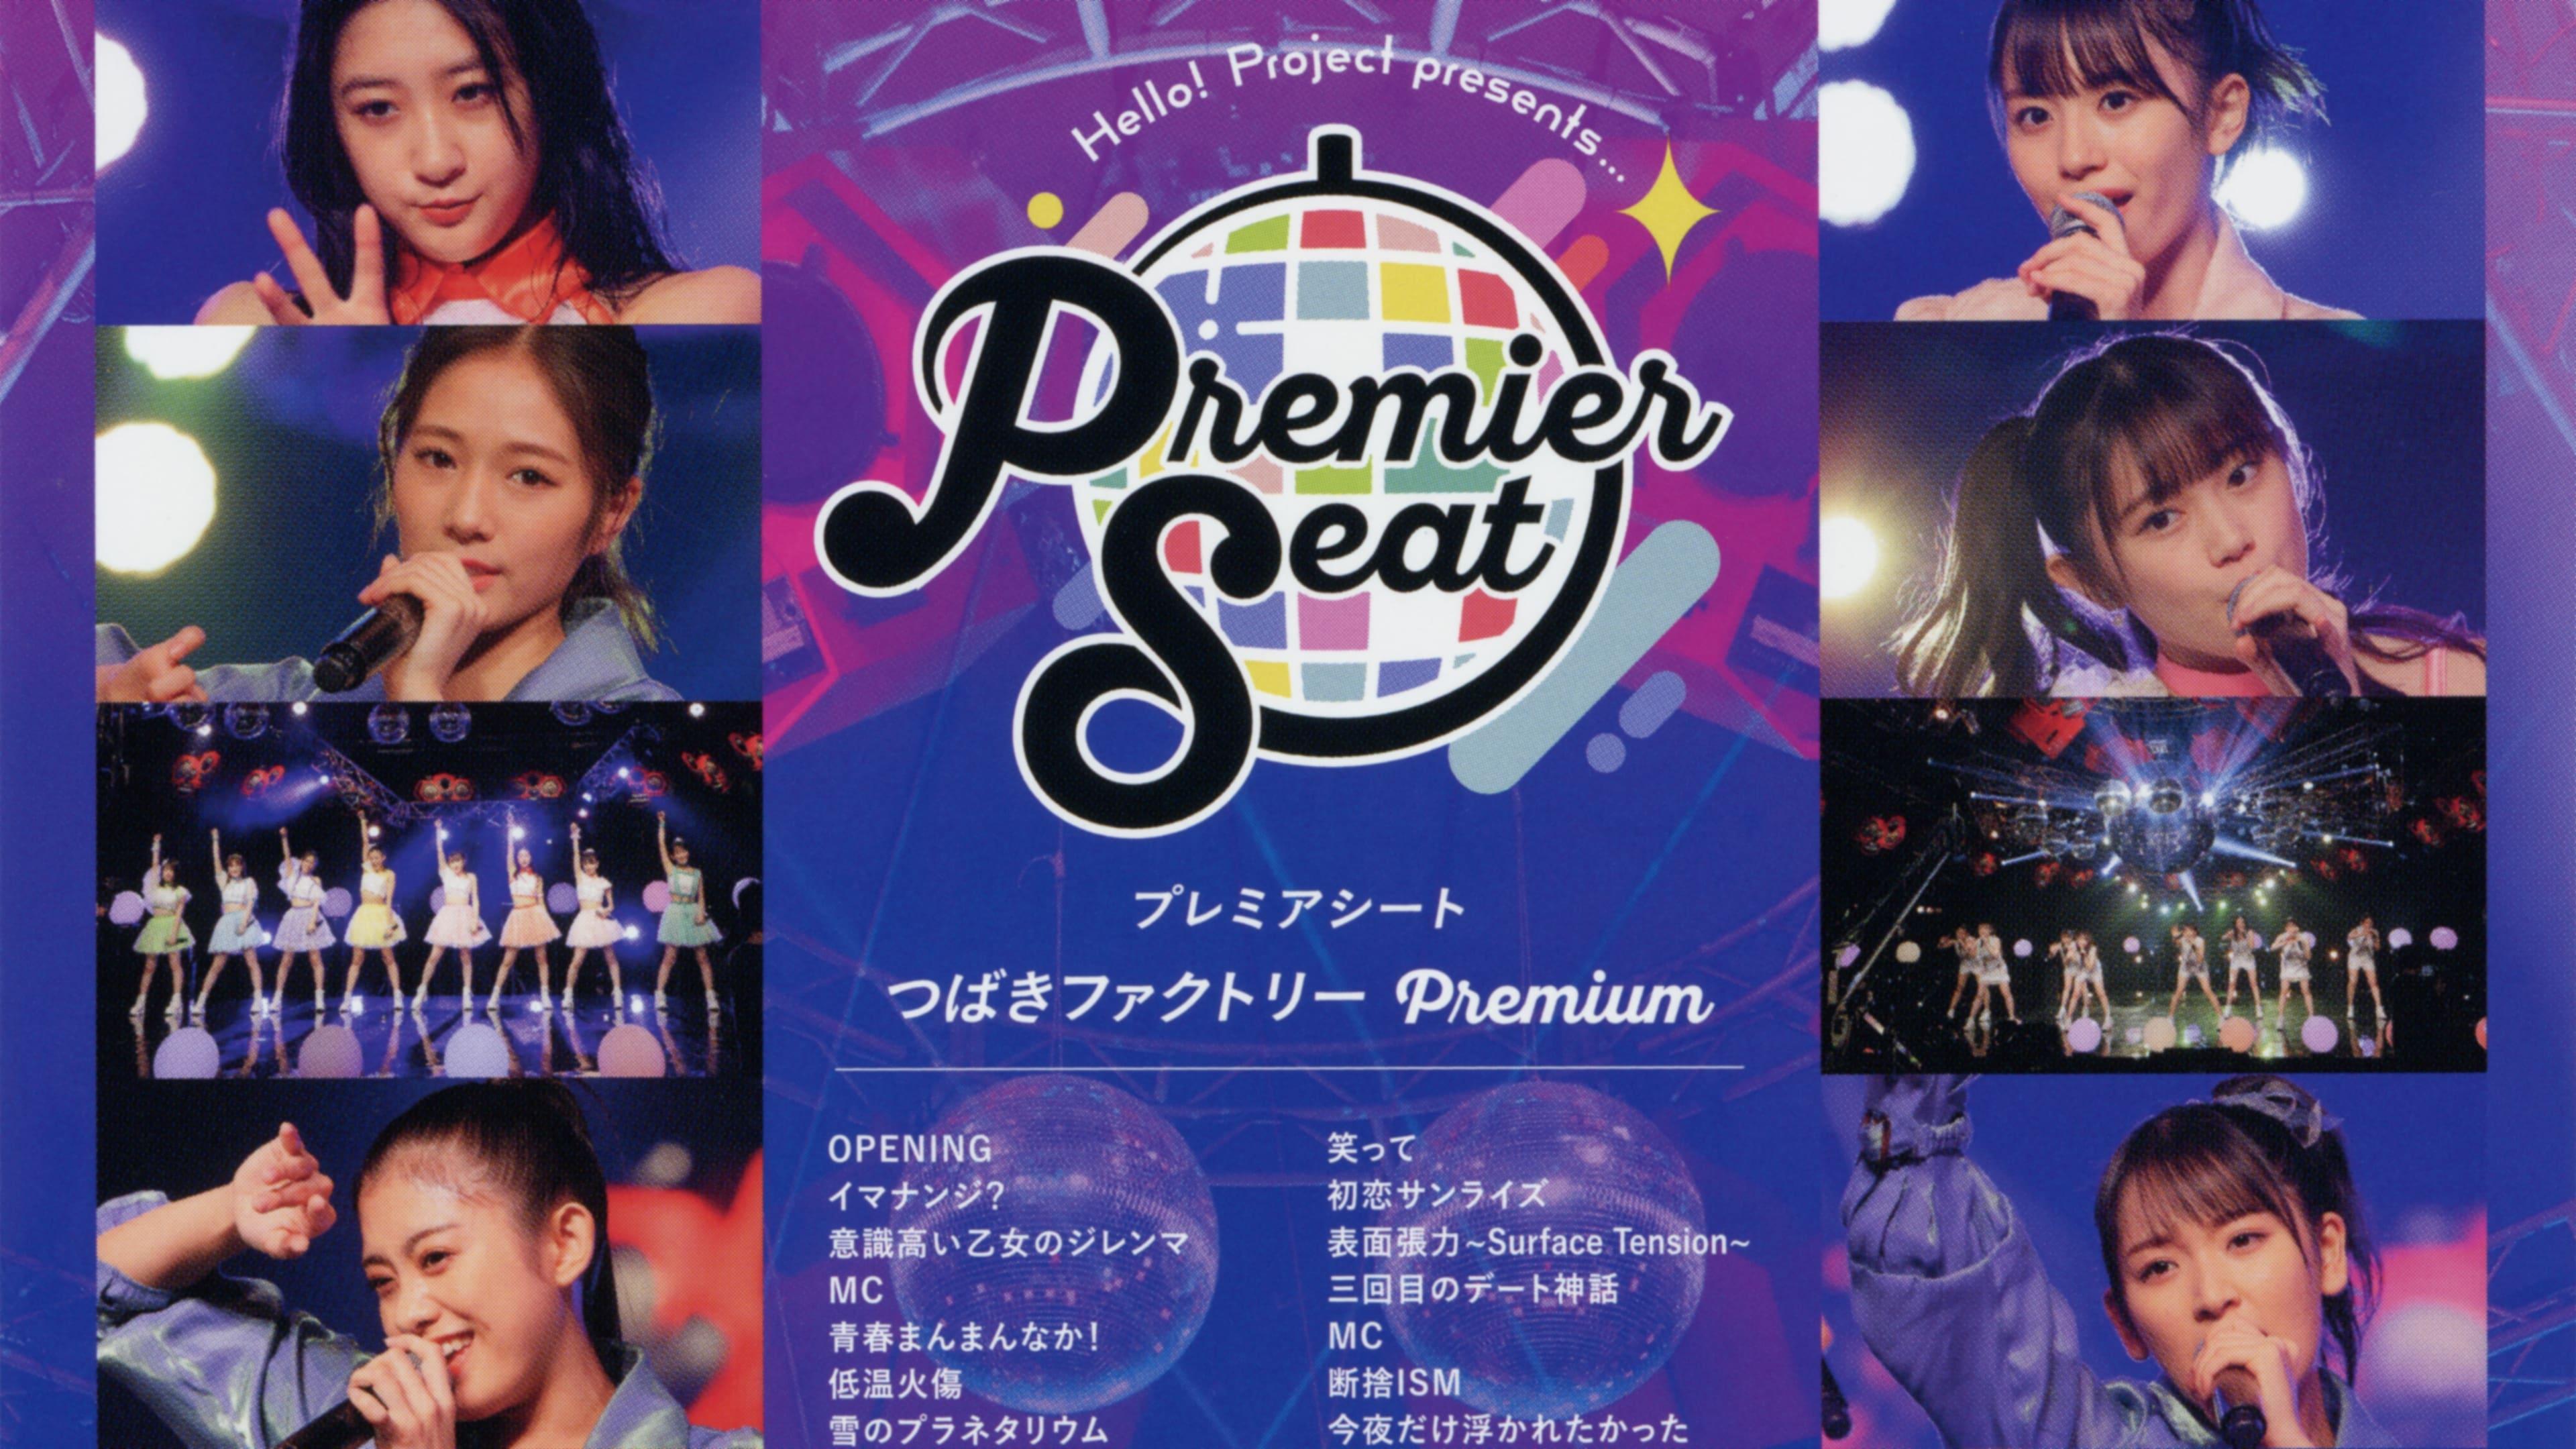 Hello! Project presents... "premier seat" ~Tsubaki Factory Premium~ backdrop